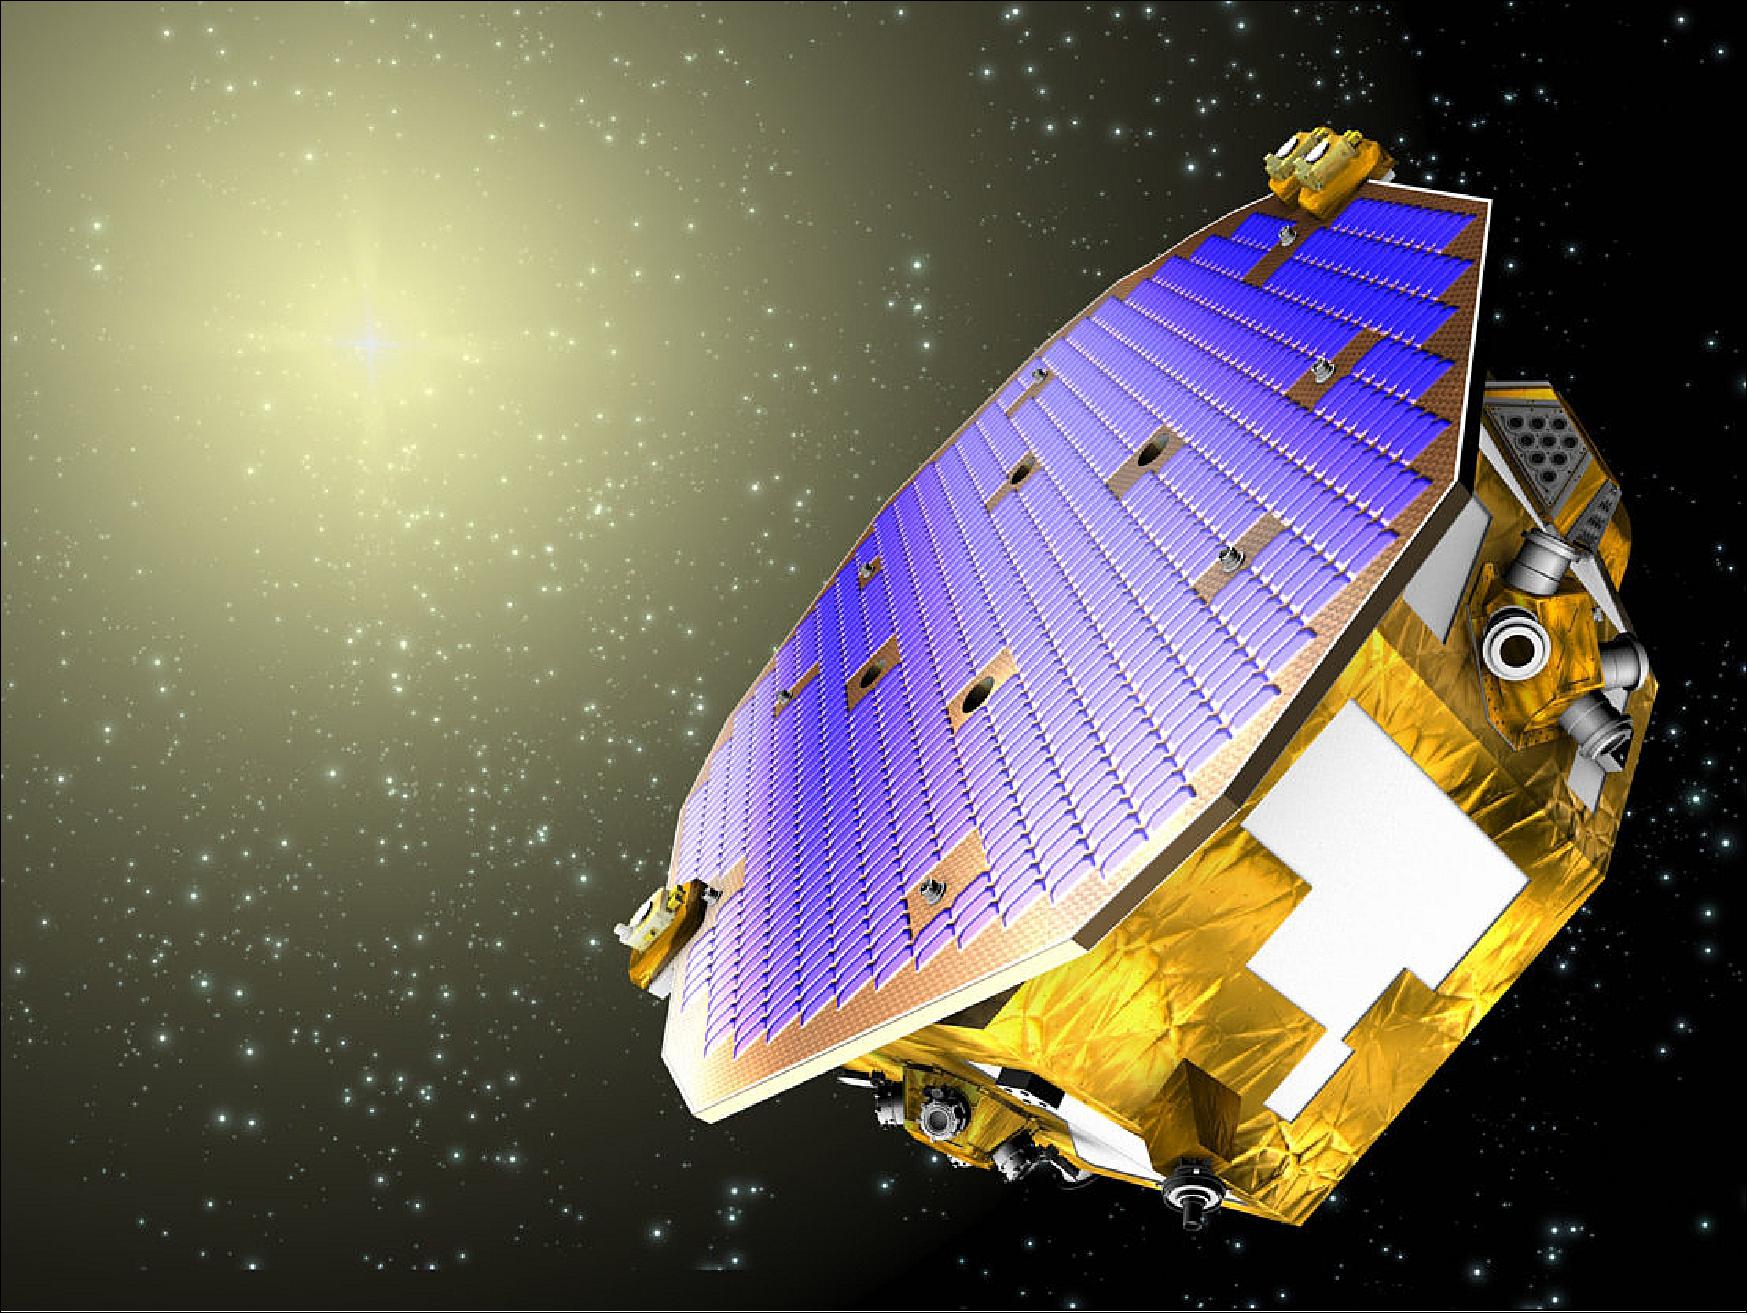 Figure 76: Illustration of the LISA Pathfinder spacecraft (image credit: ESA)